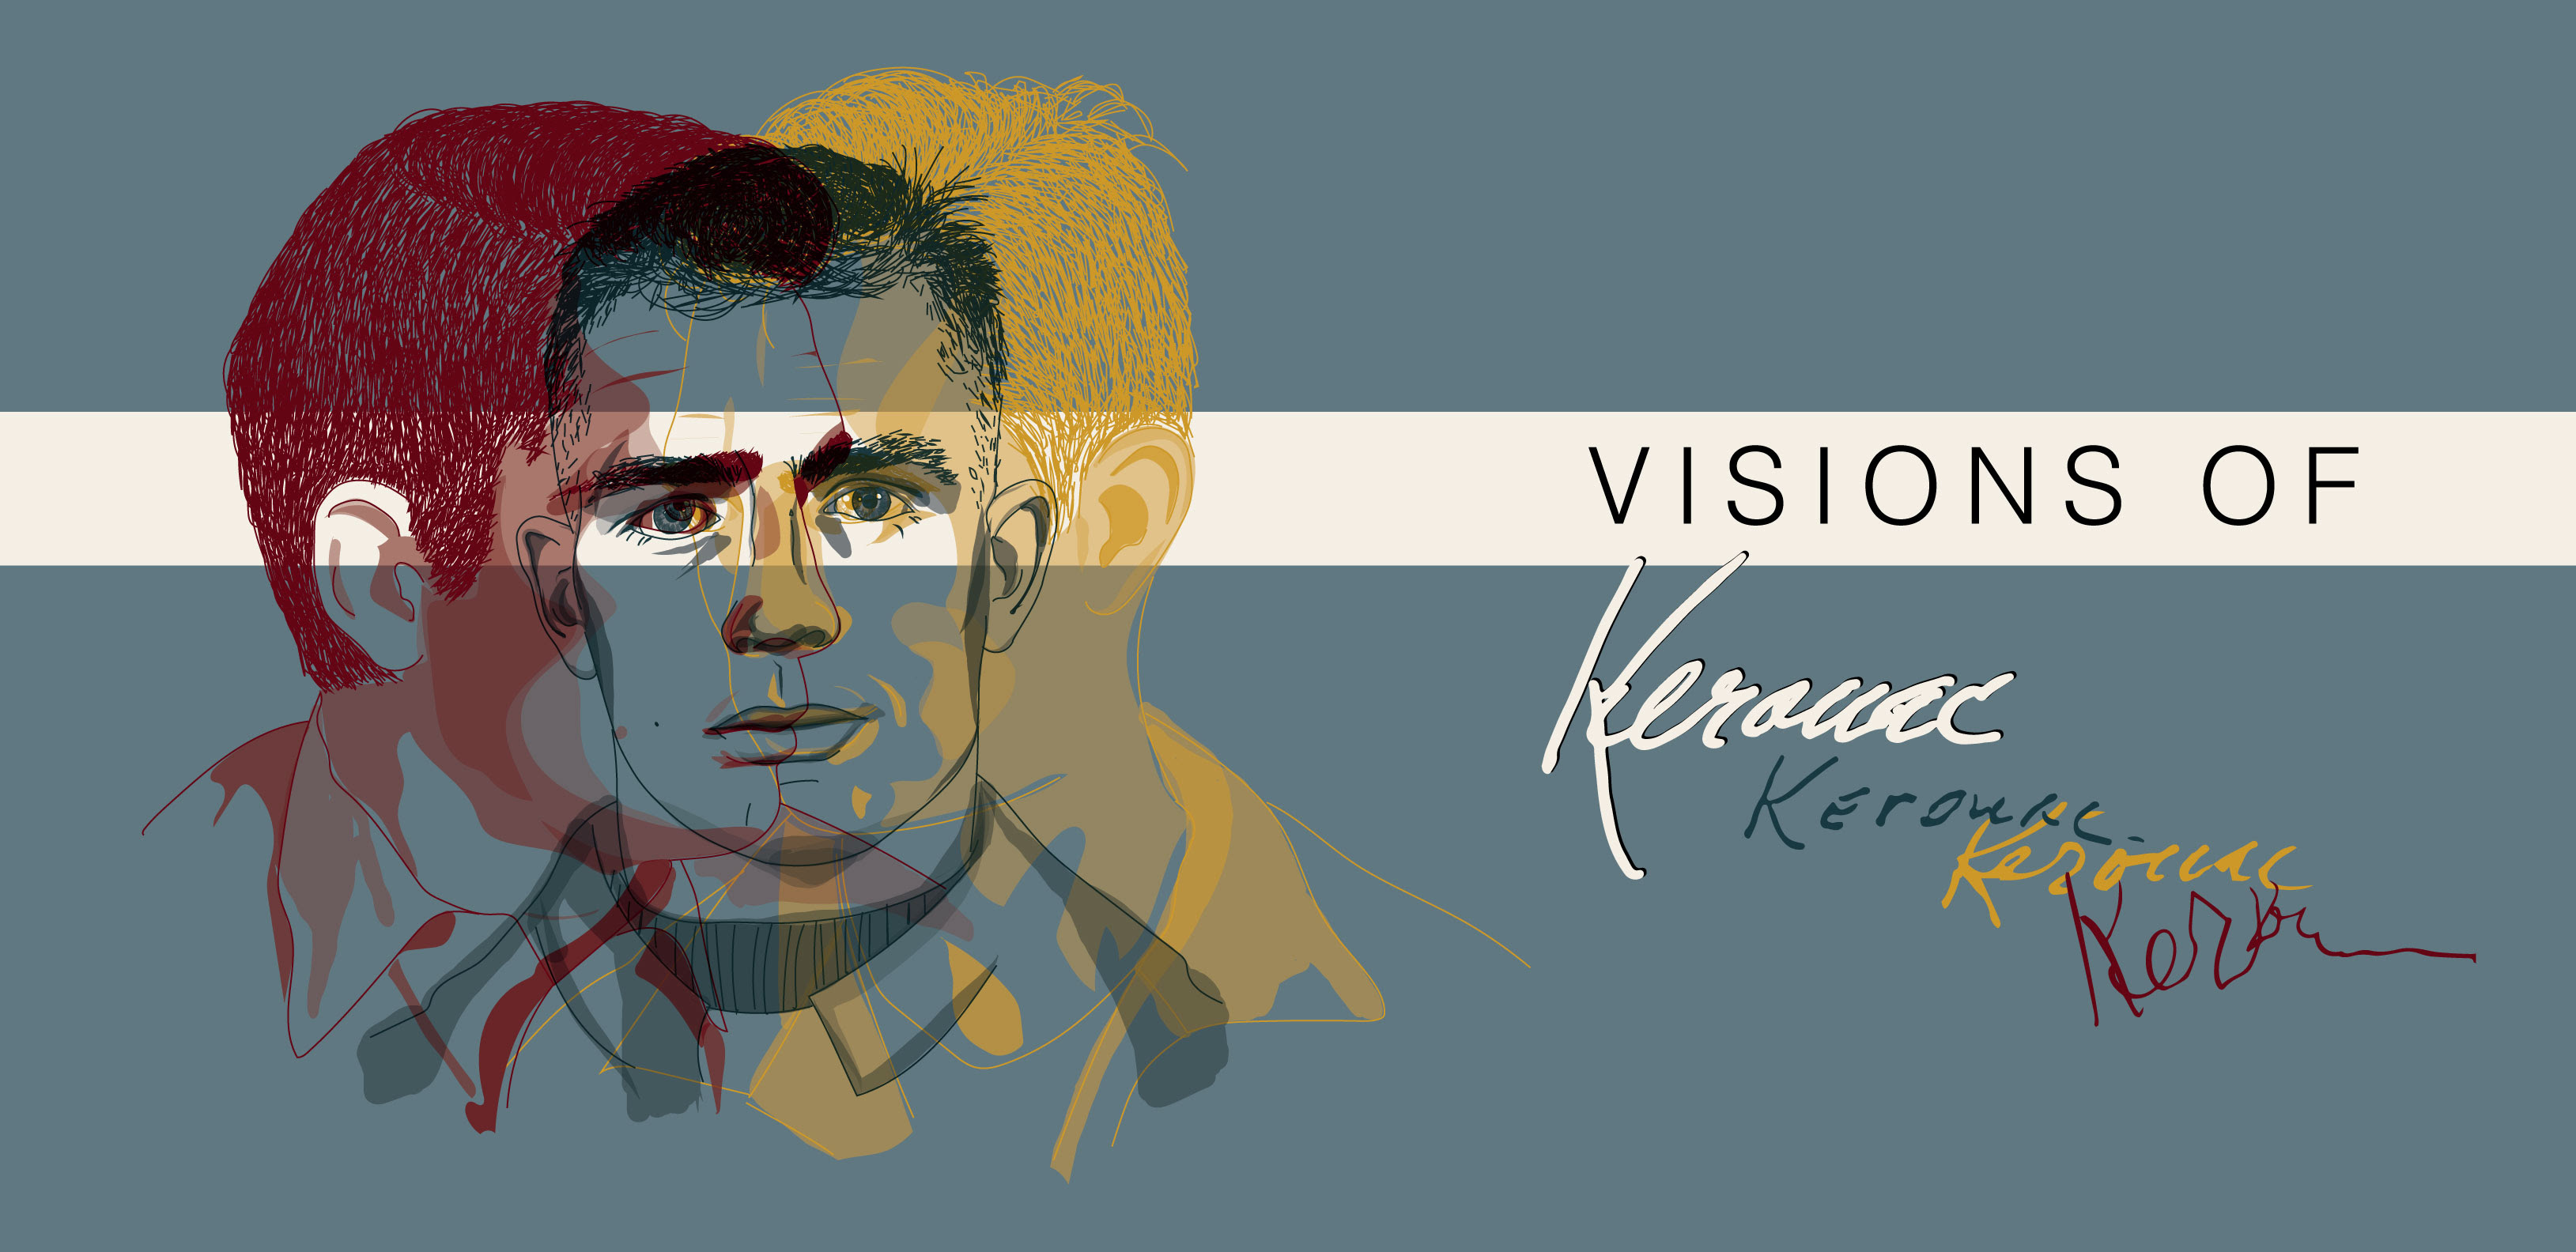 Kerouac@100 celebrates legacy, worldwide influence of iconic author